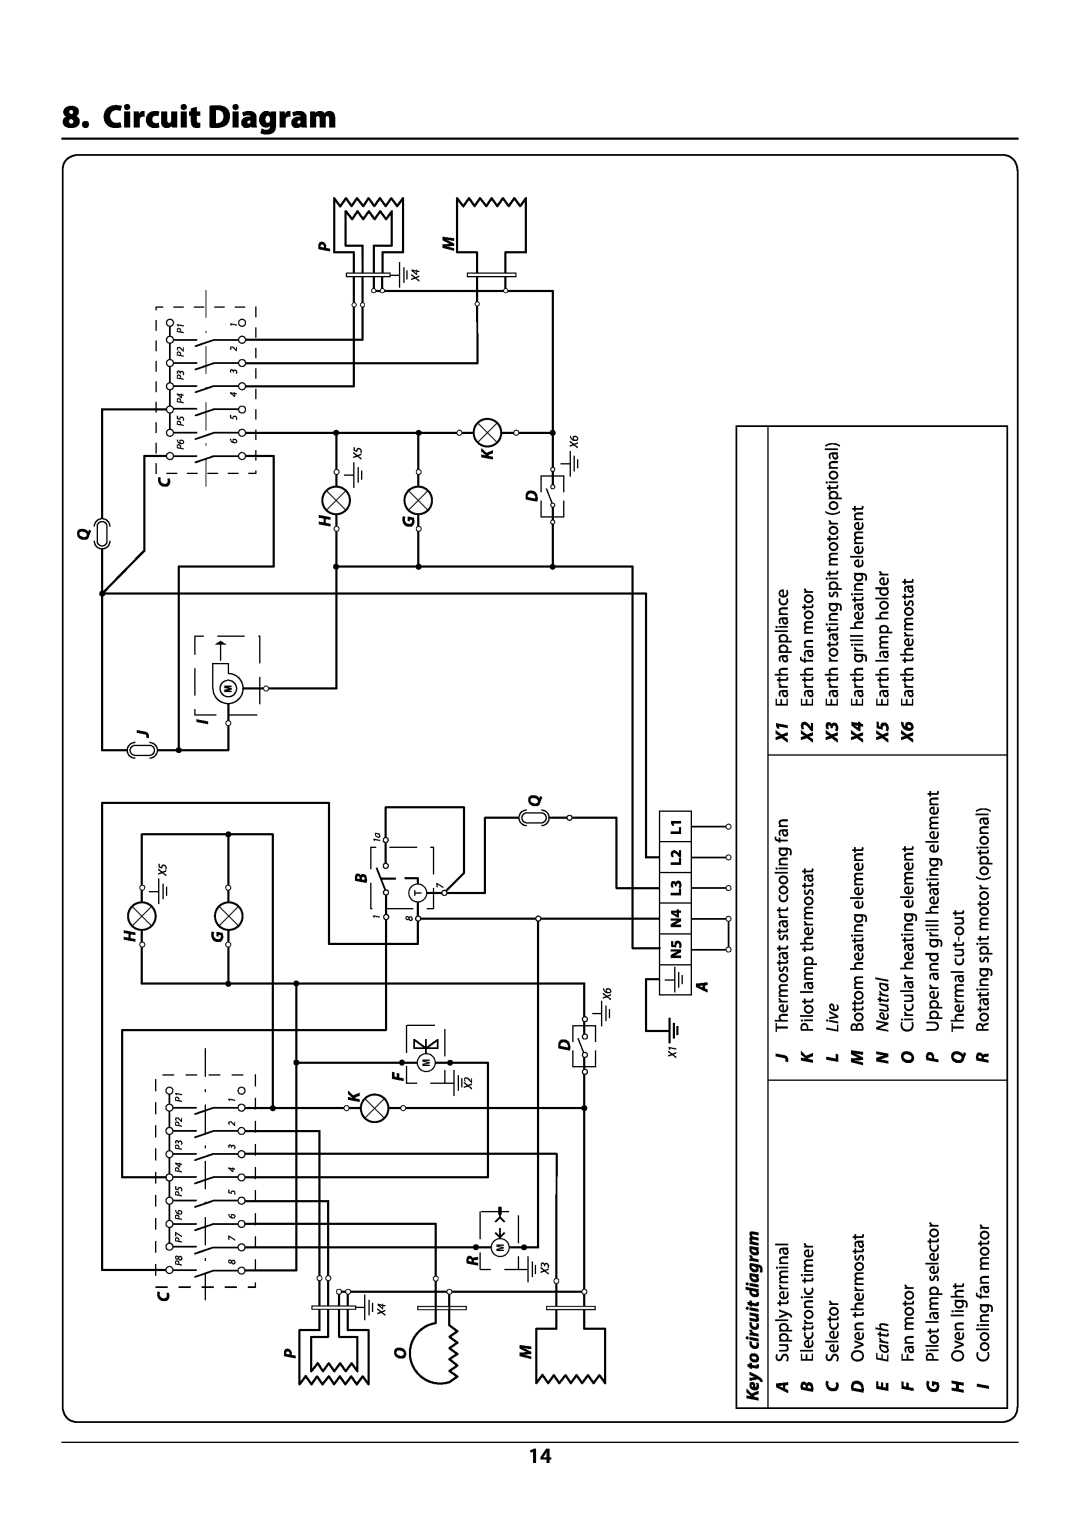 Rangemaster manual Circuit Diagram, Key to circuit diagram, L Live, Circuit diagram R7247 oven 